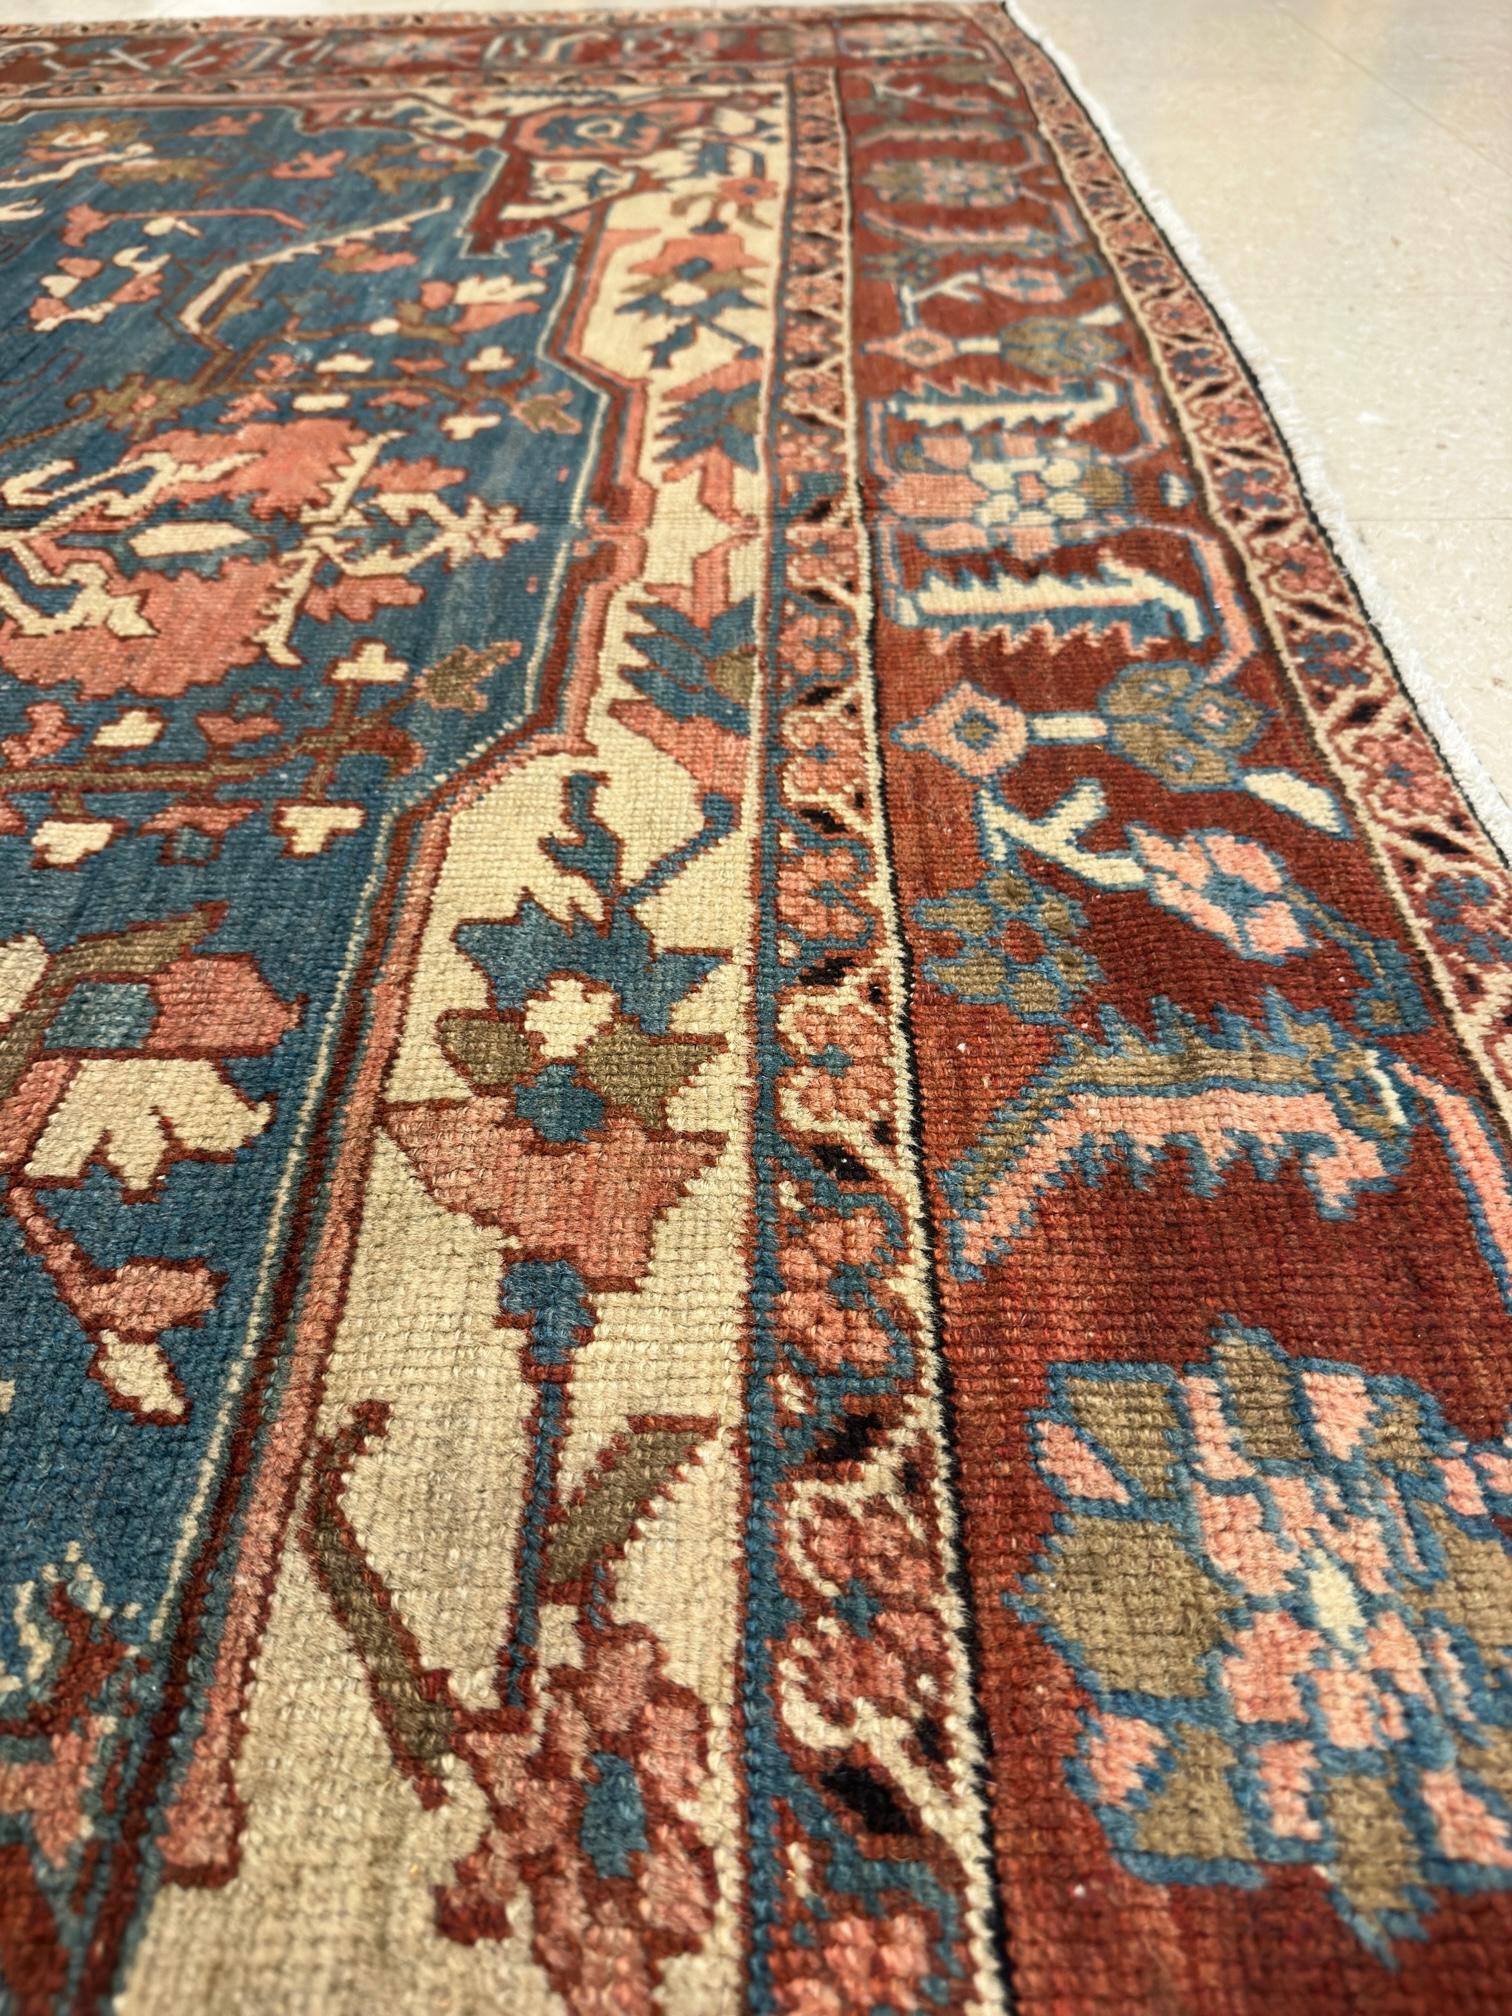 Antique Persian Serapi Carpet, Handmade Rug Light Blue, Ivory, Rusty Red For Sale 3